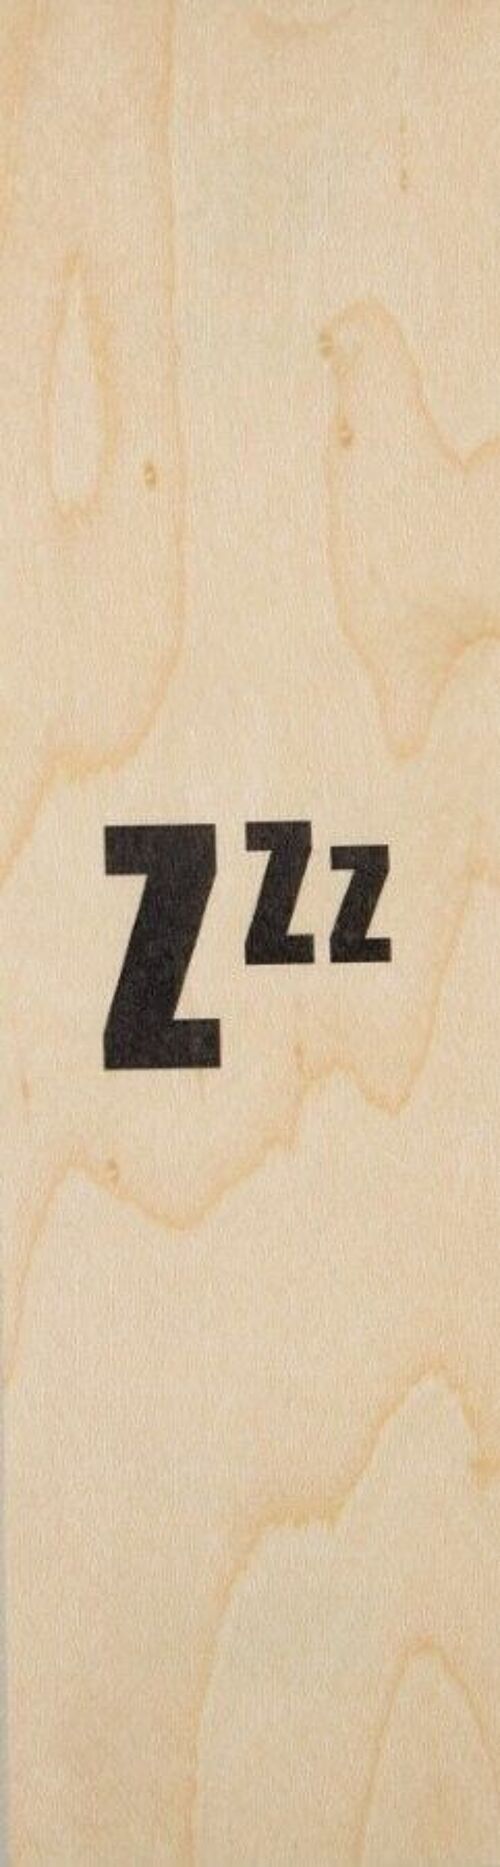 Marque-pages en bois - reading zzz